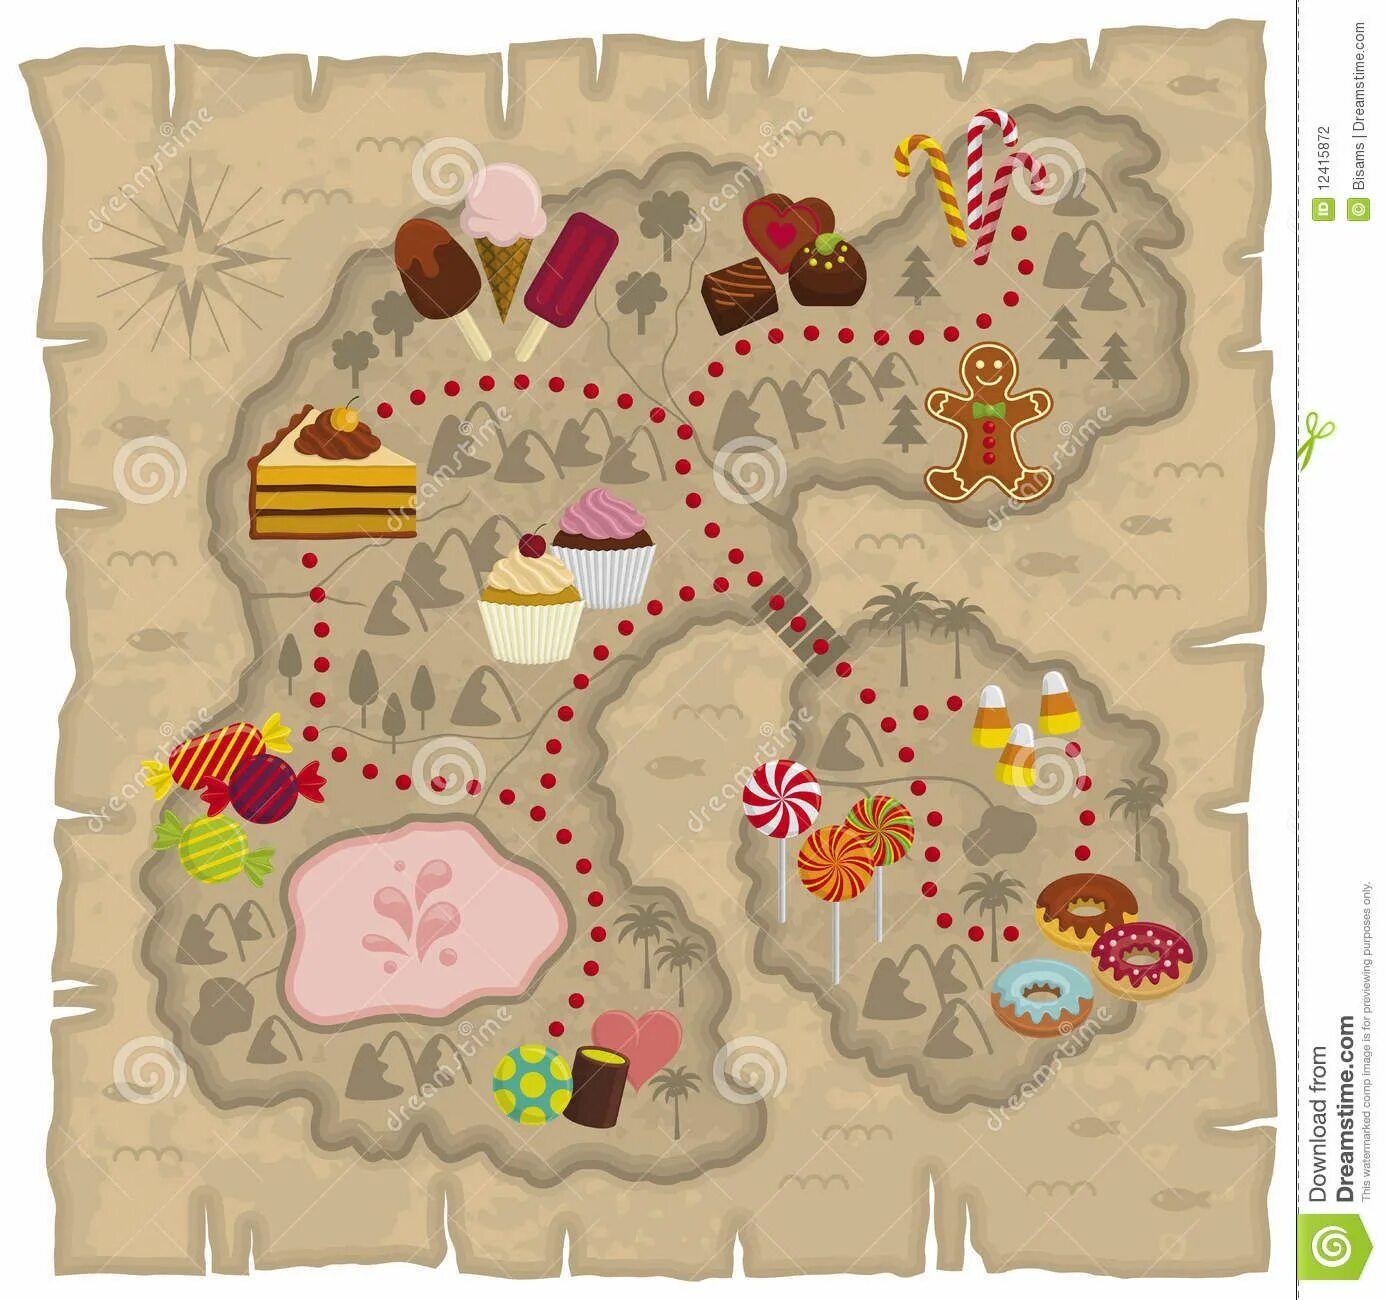 Кэнди карта. Карта сладостей. Карта путешествия в волшебную страну. Карта конфетной страны. Карта сказочного царства для игры.